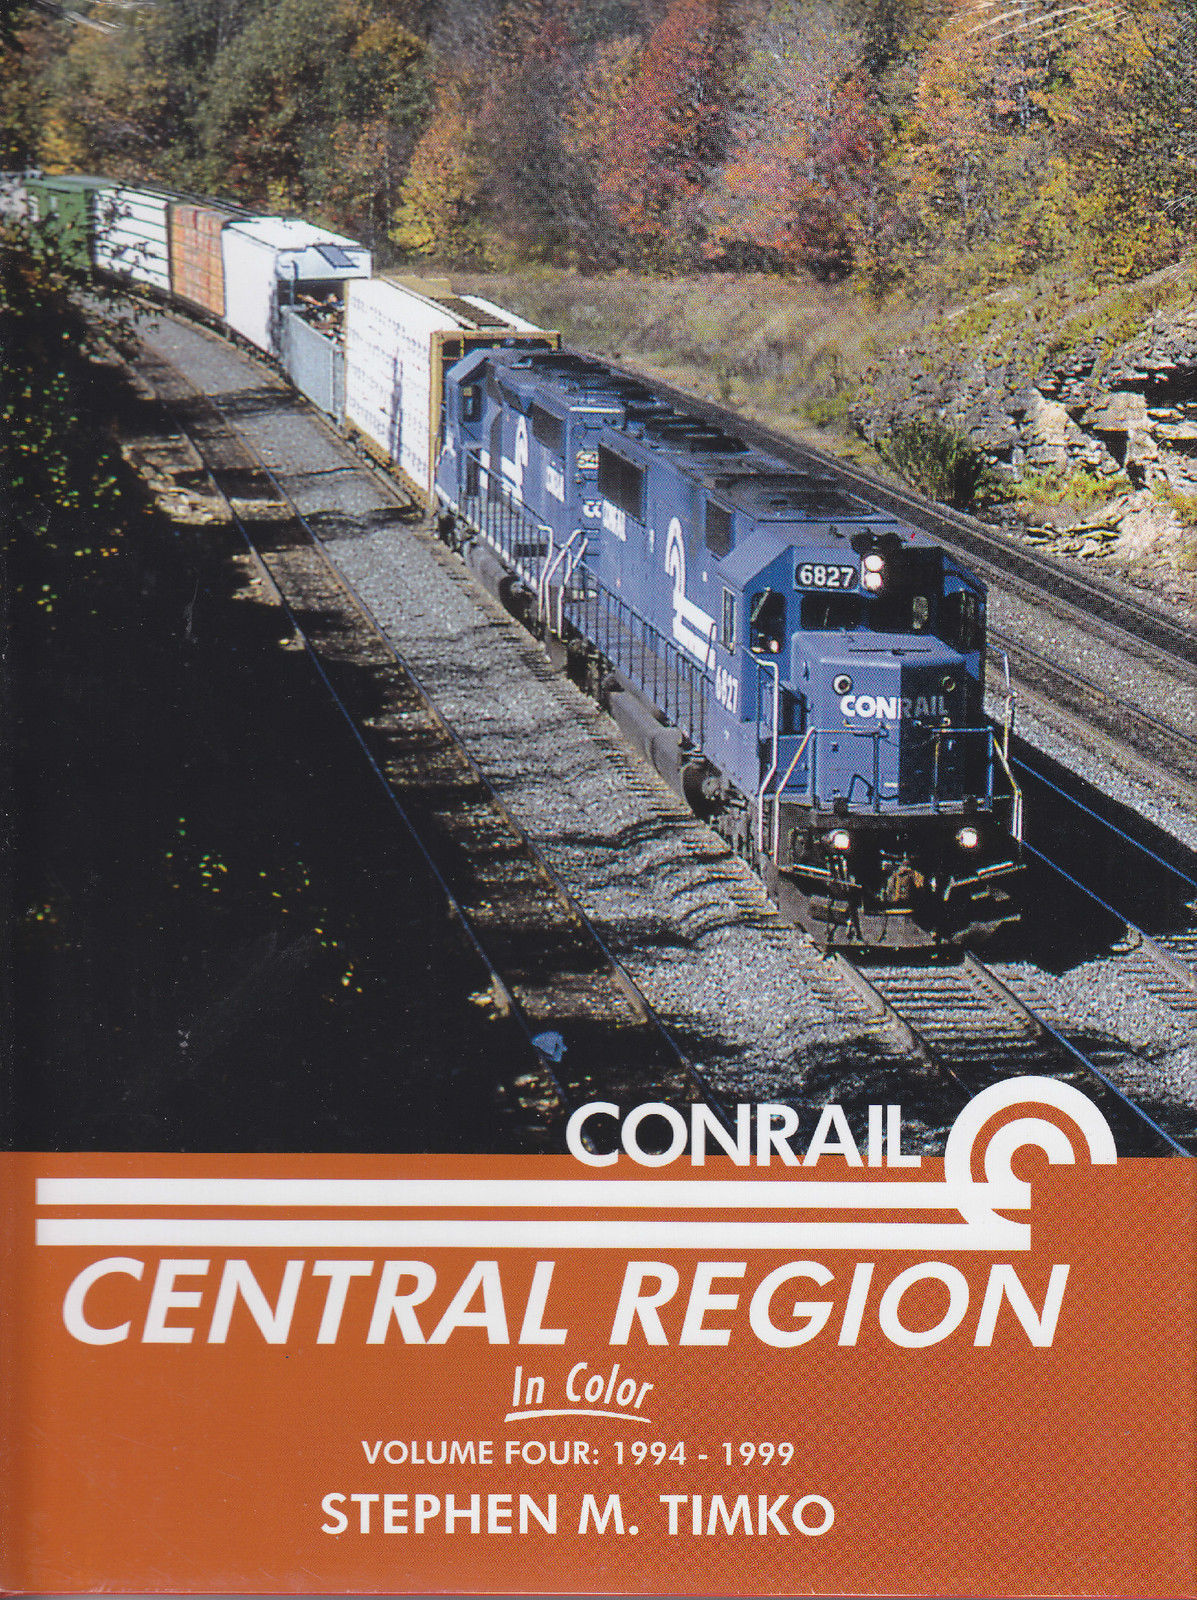 CONRAIL CENTRAL REGION in Color, Vol. 4 - 1994-1999 -- (NEW BOOK)